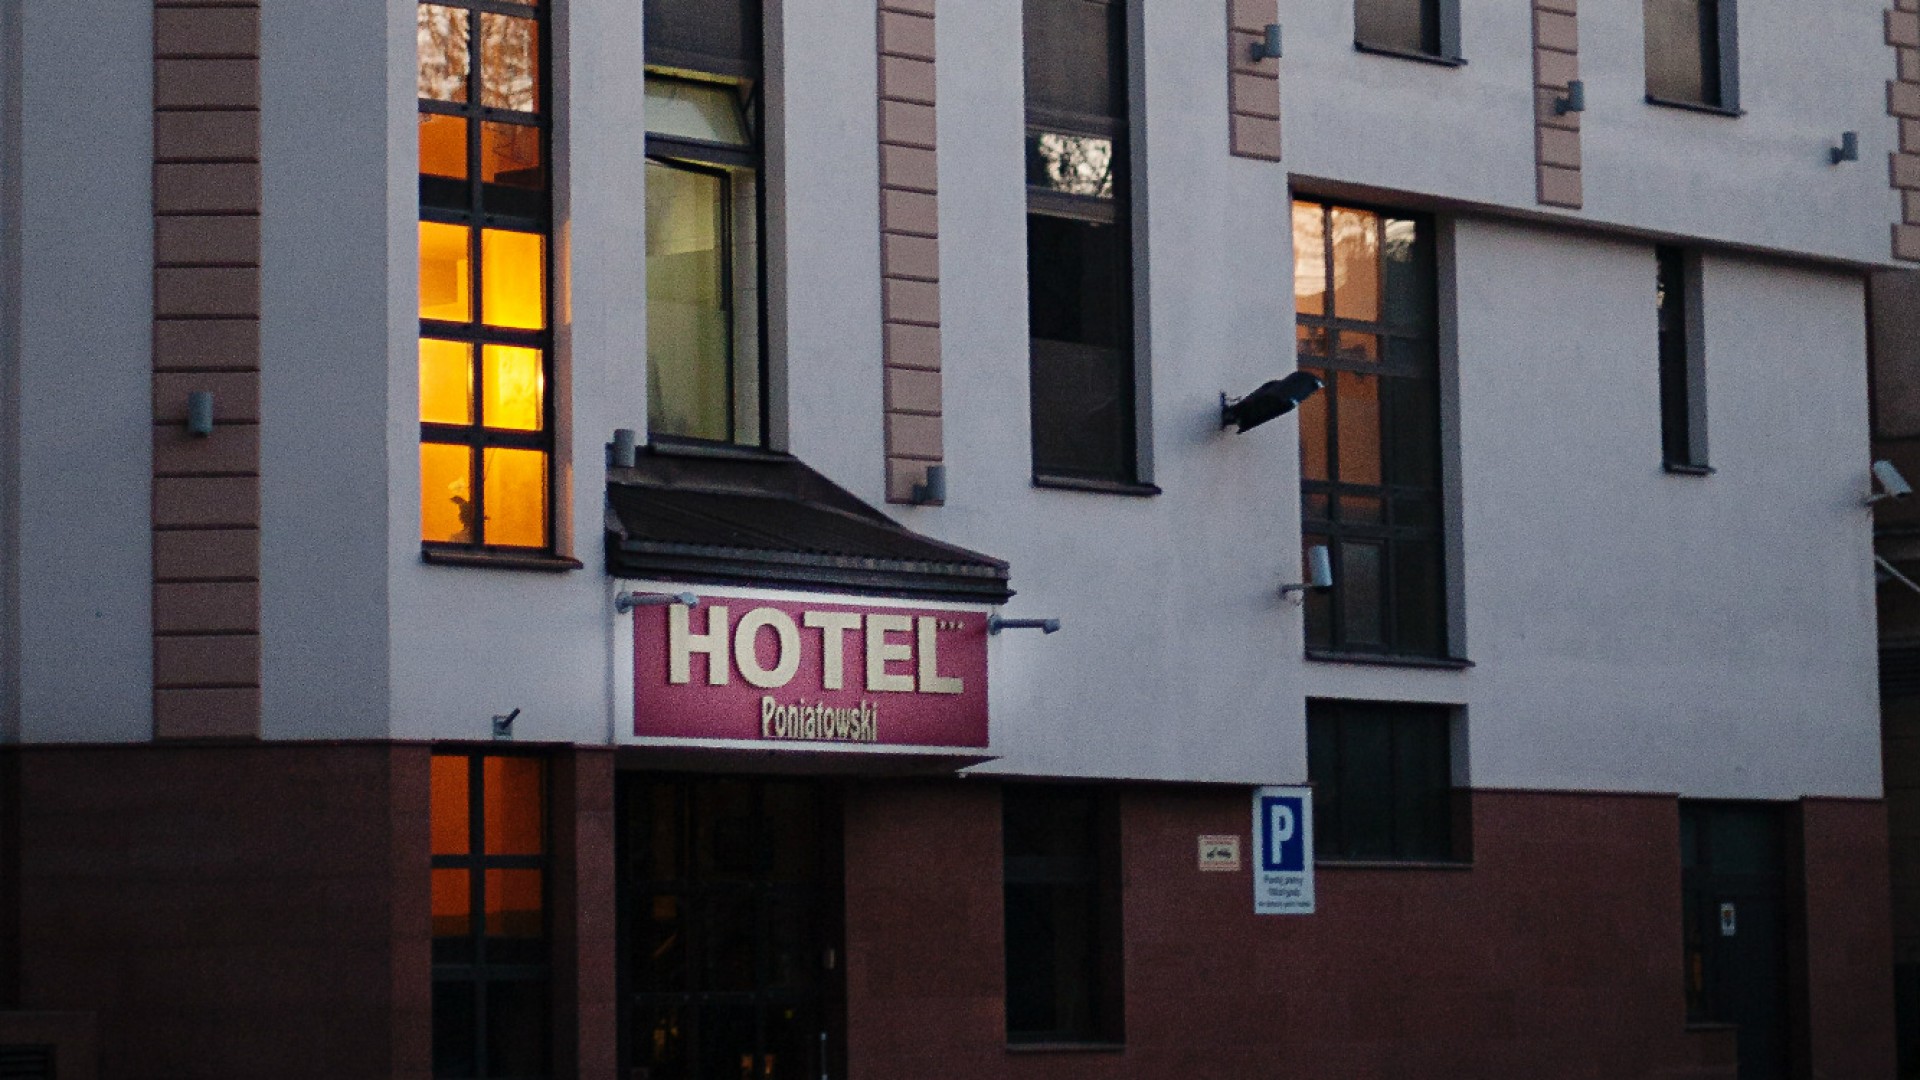 Poniatowski Hotel